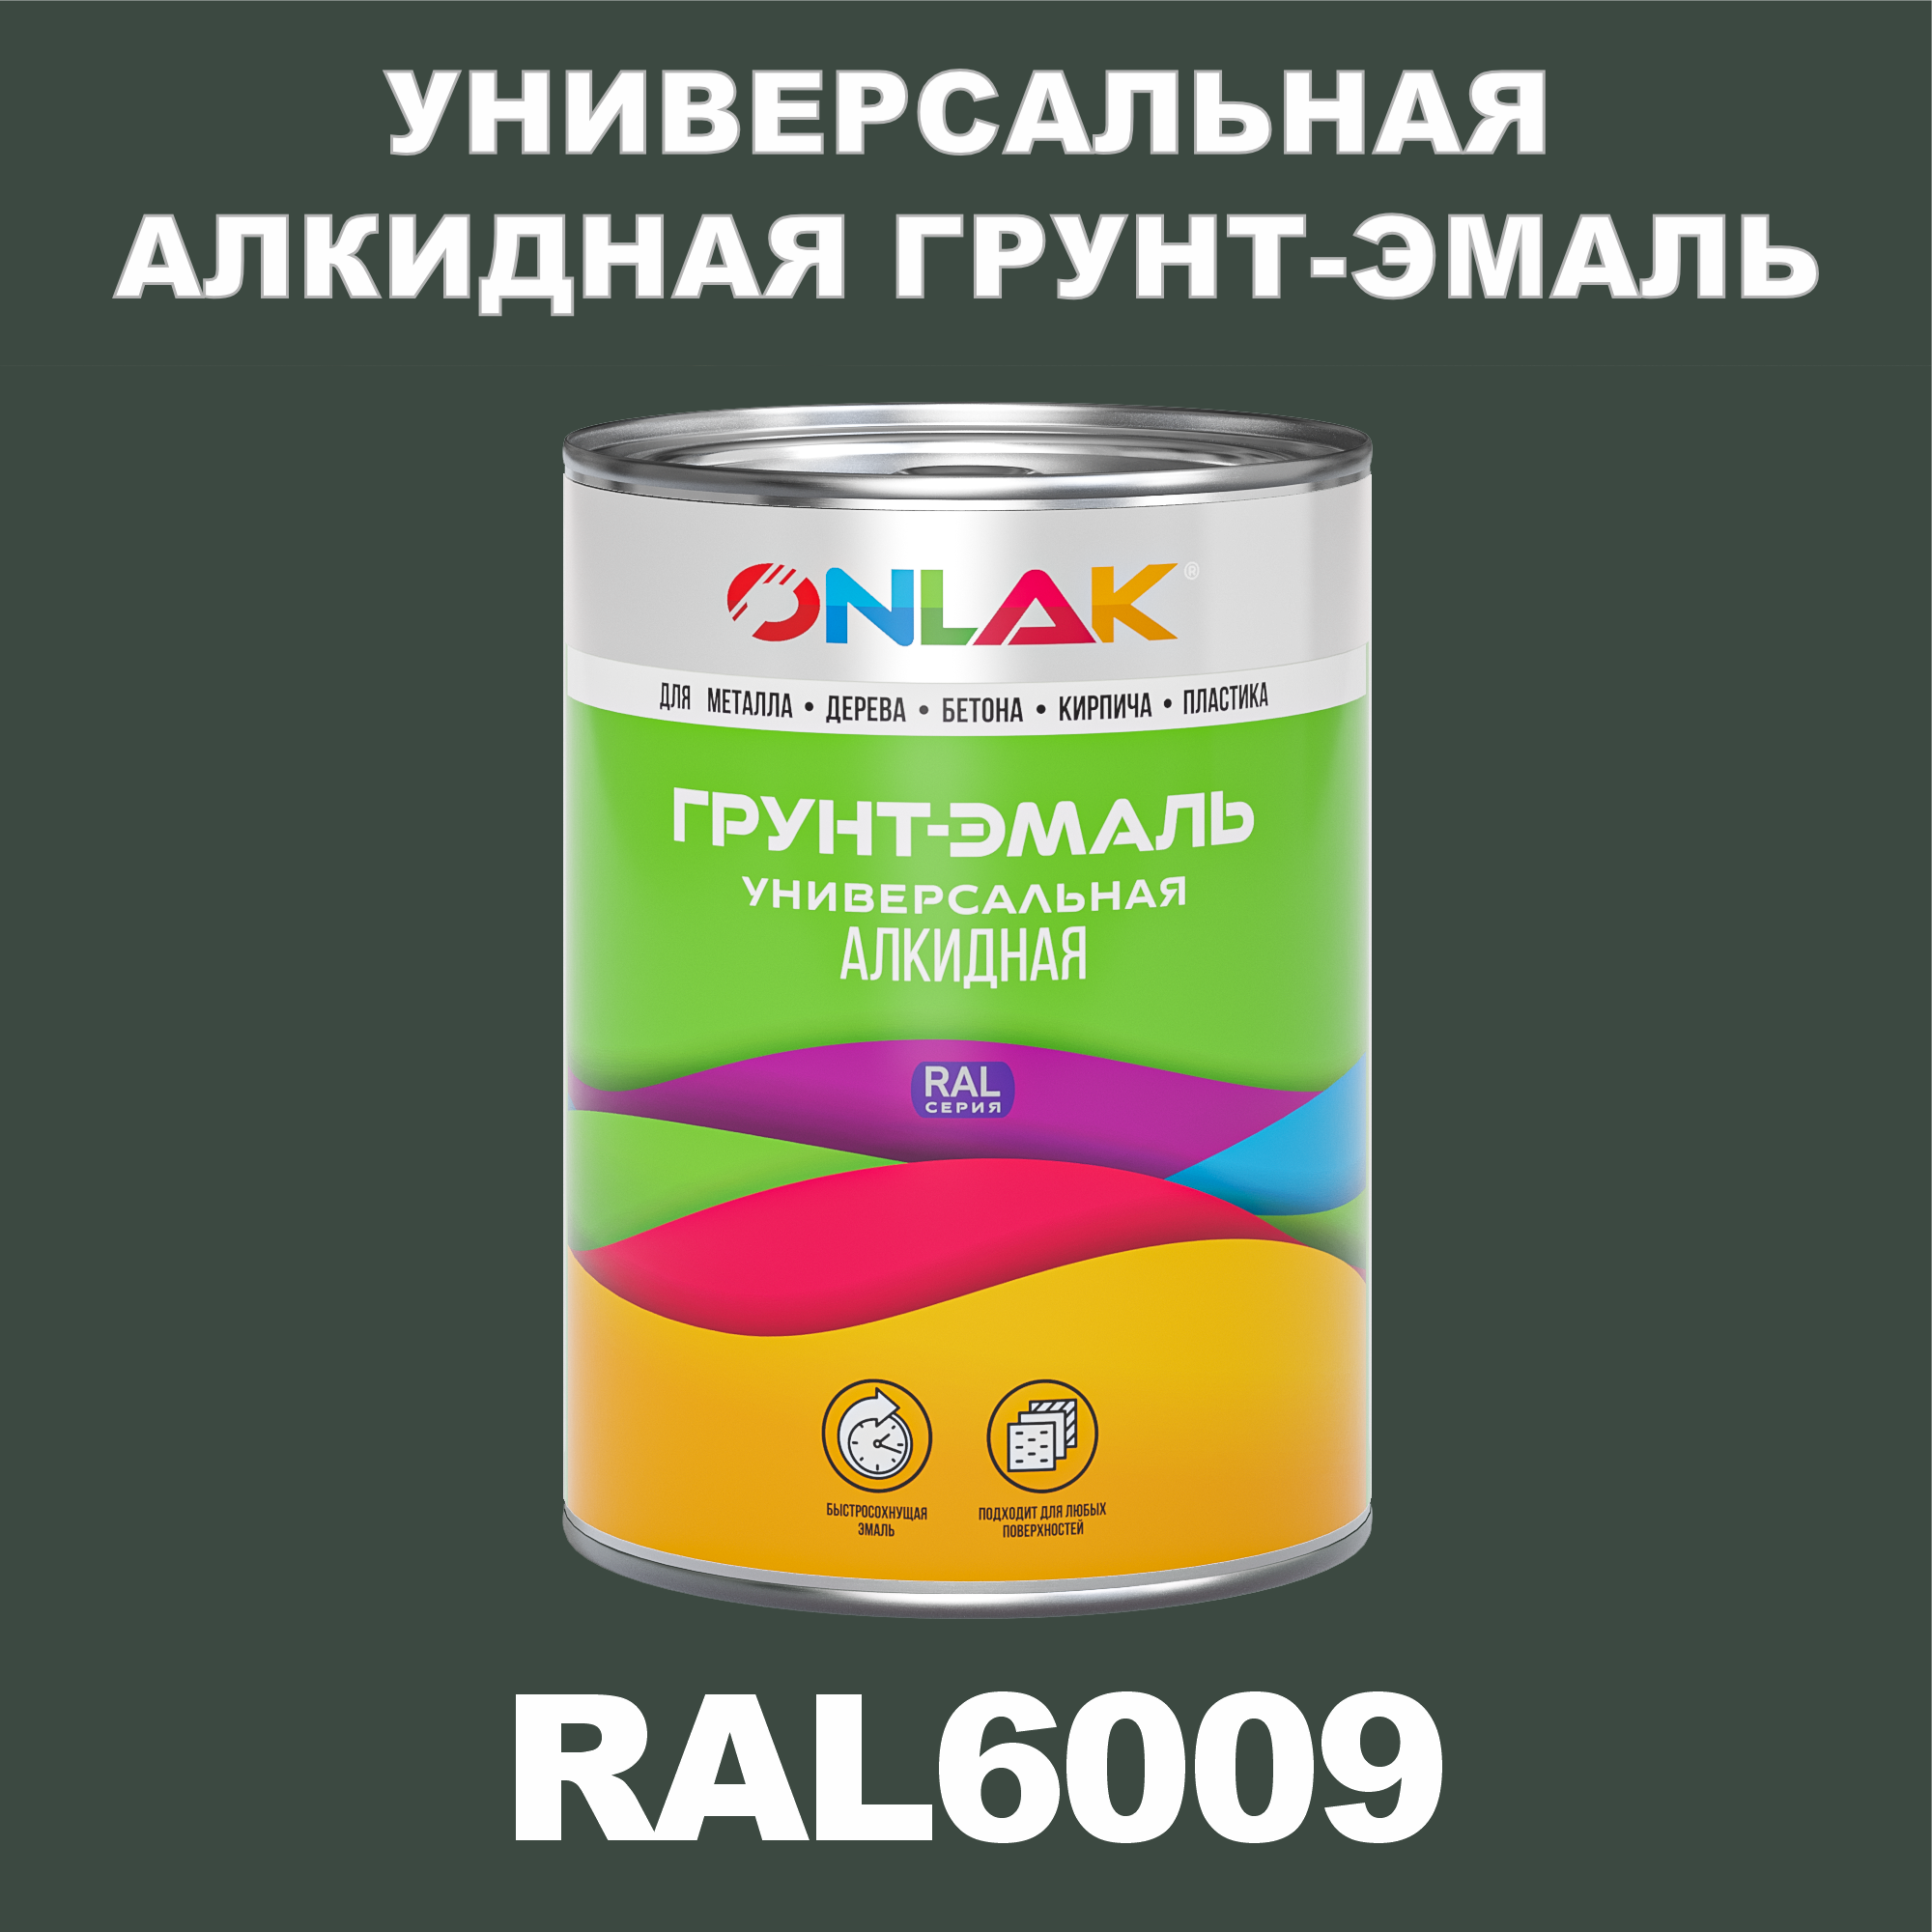 Грунт-эмаль ONLAK 1К RAL6009 антикоррозионная алкидная по металлу по ржавчине 1 кг грунт эмаль neomid по ржавчине быстросохнущая алкидная серая 0 9 кг